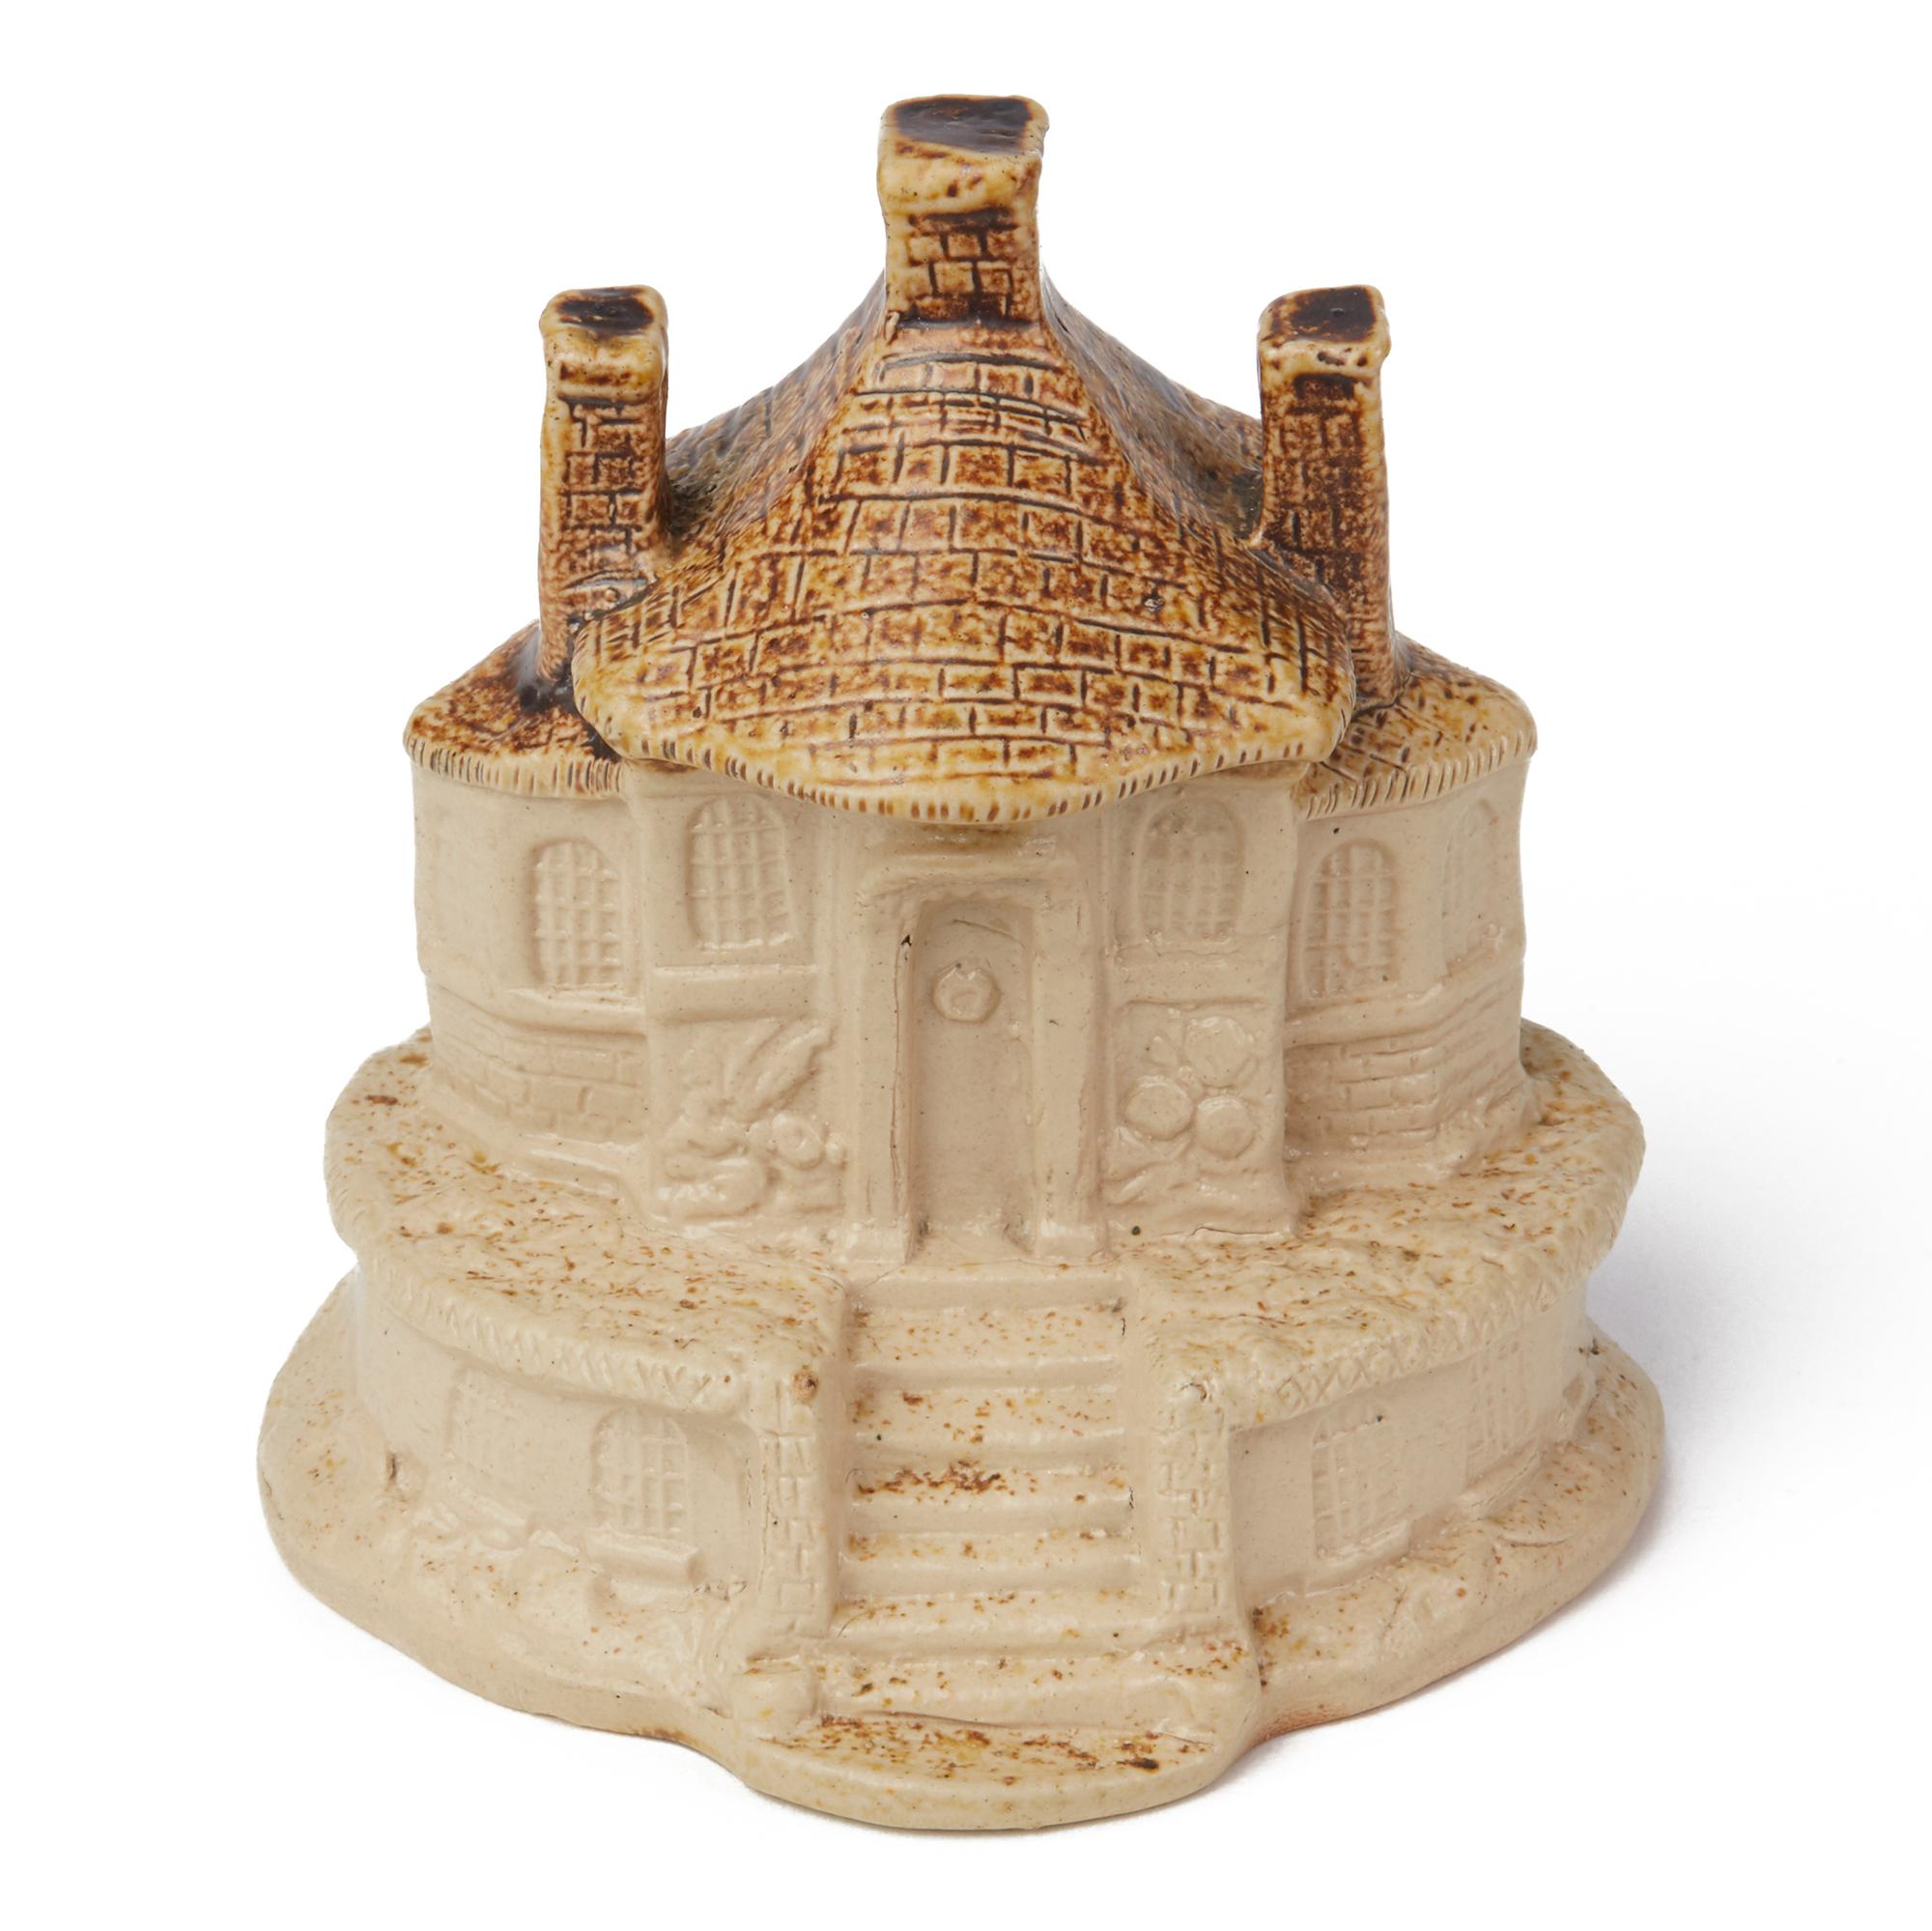 Rare modèle antique en grès émaillé au sel de Brampton, Derbyshire, représentant un cottage sur une base de forme ovale, avec de bons détails et une finition émaillée au sel naturel, le toit étant recouvert d'une glaçure brune contrastante. Le